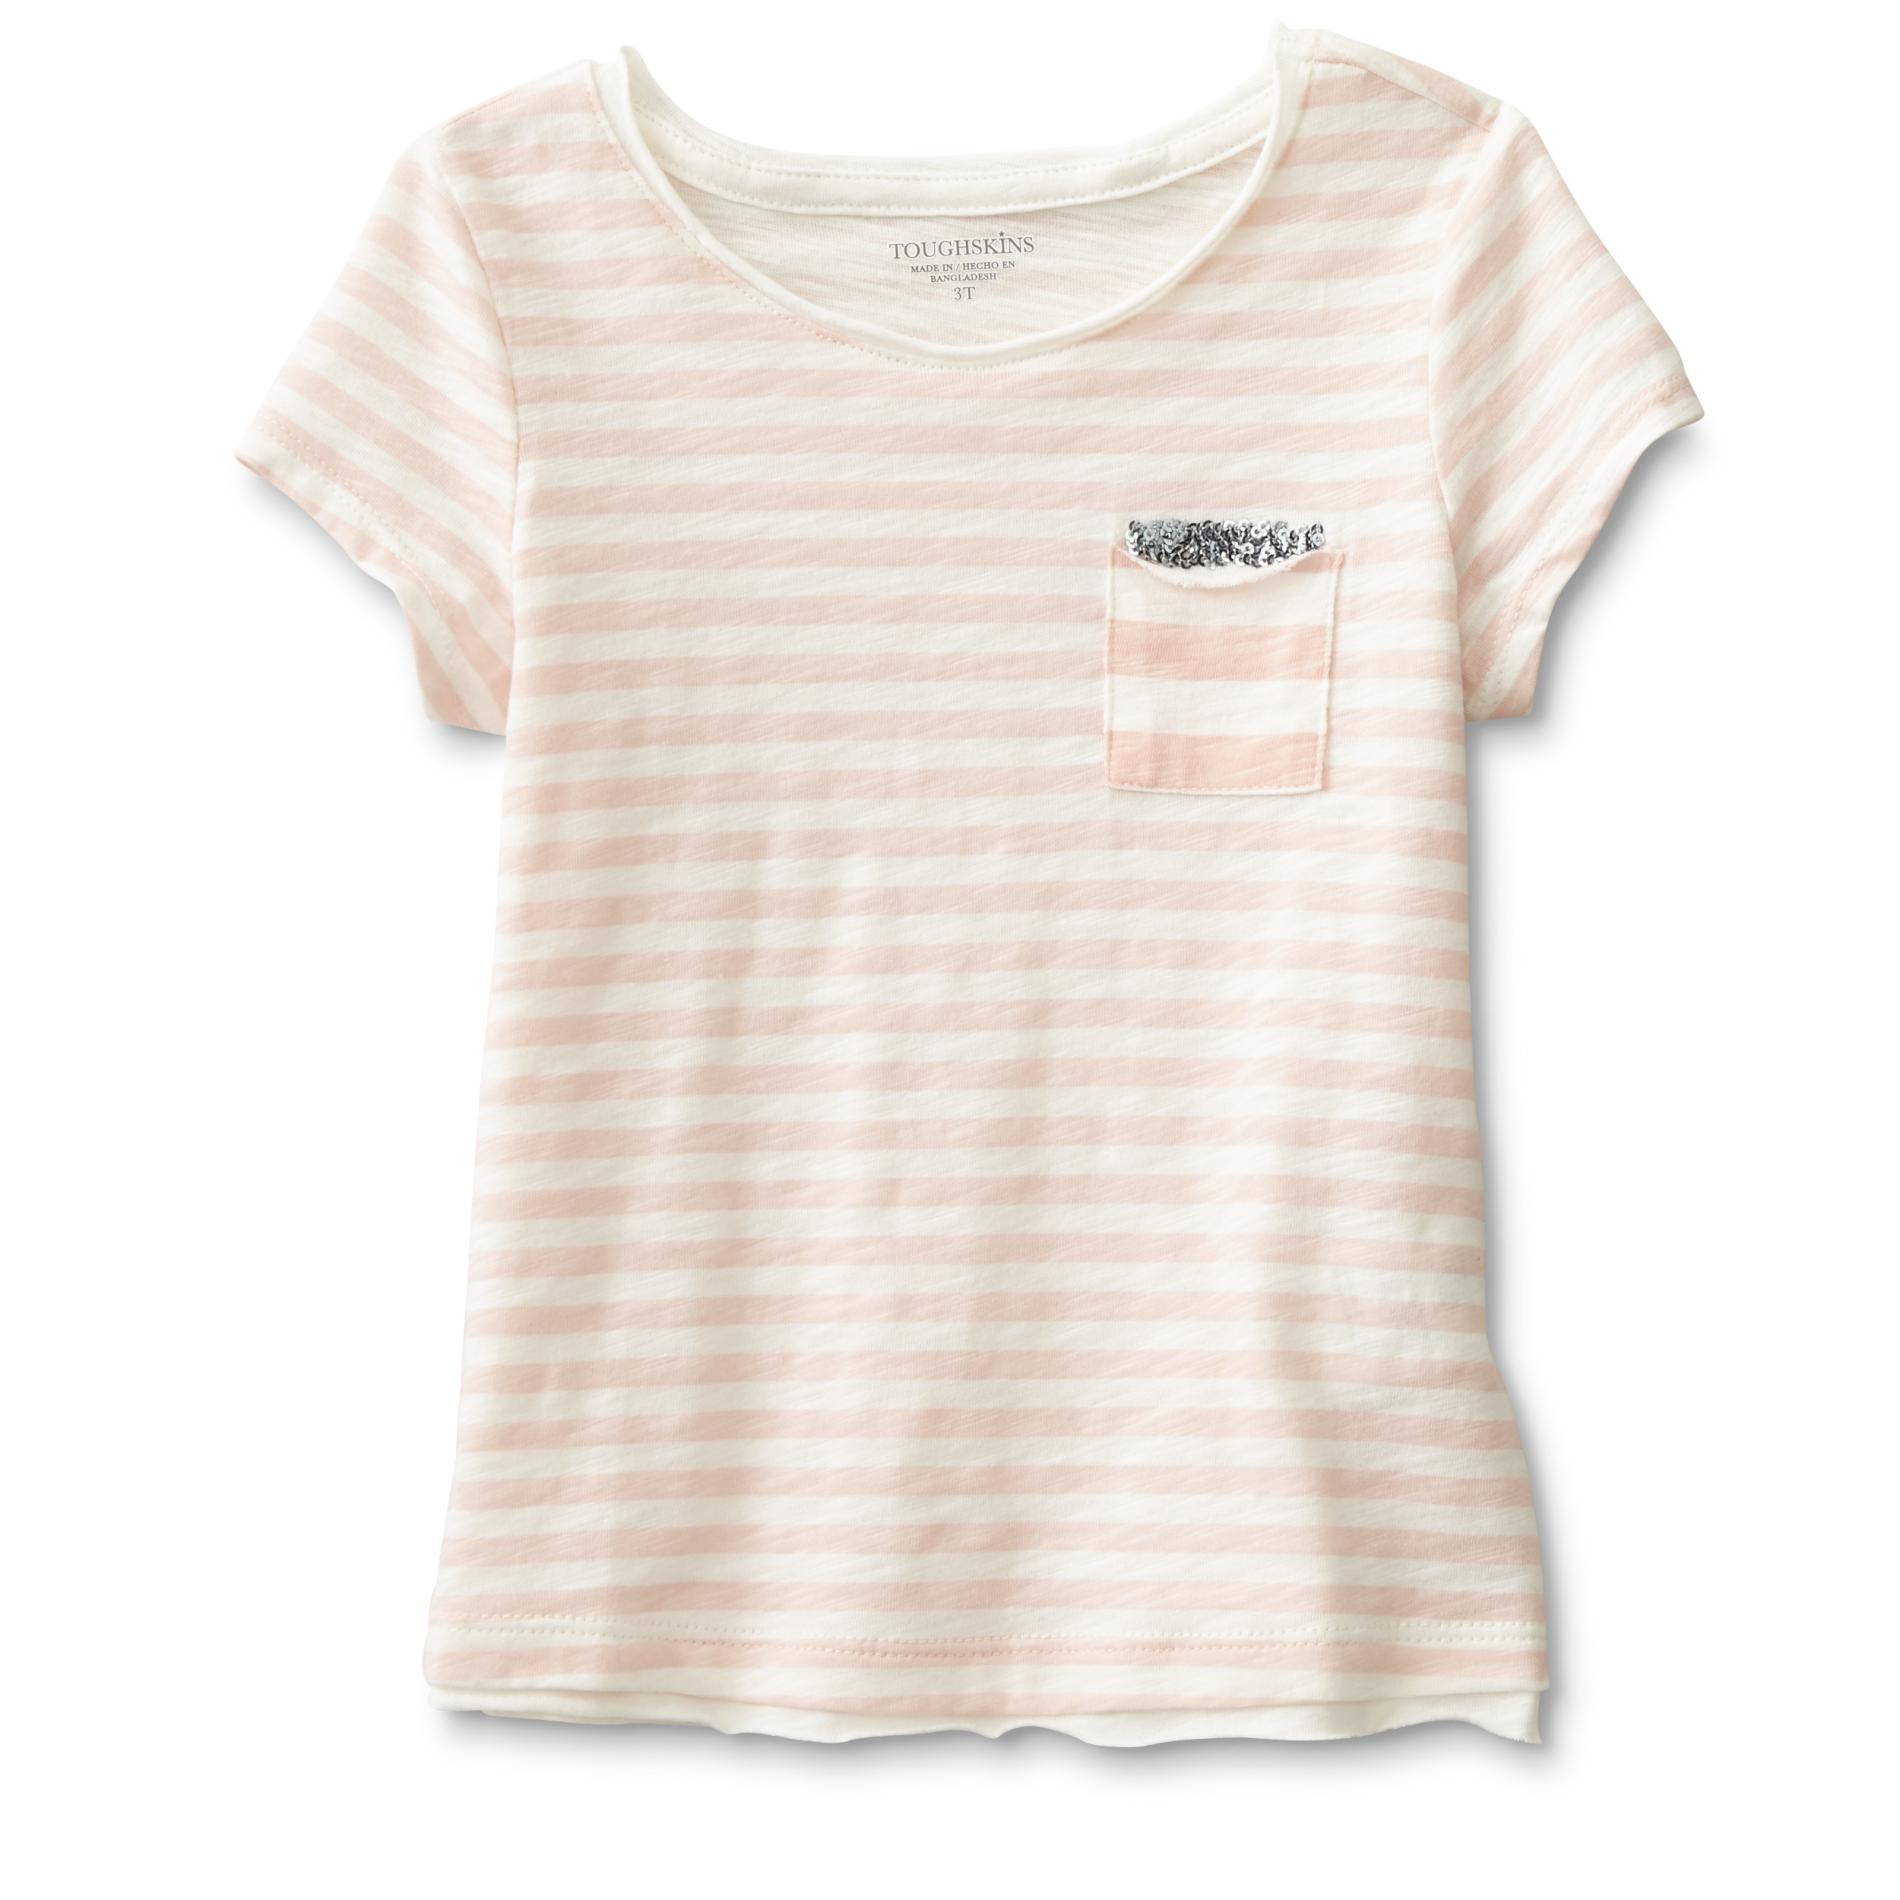 Toughskins Infant & Toddler Girl's Pocket Top - Striped